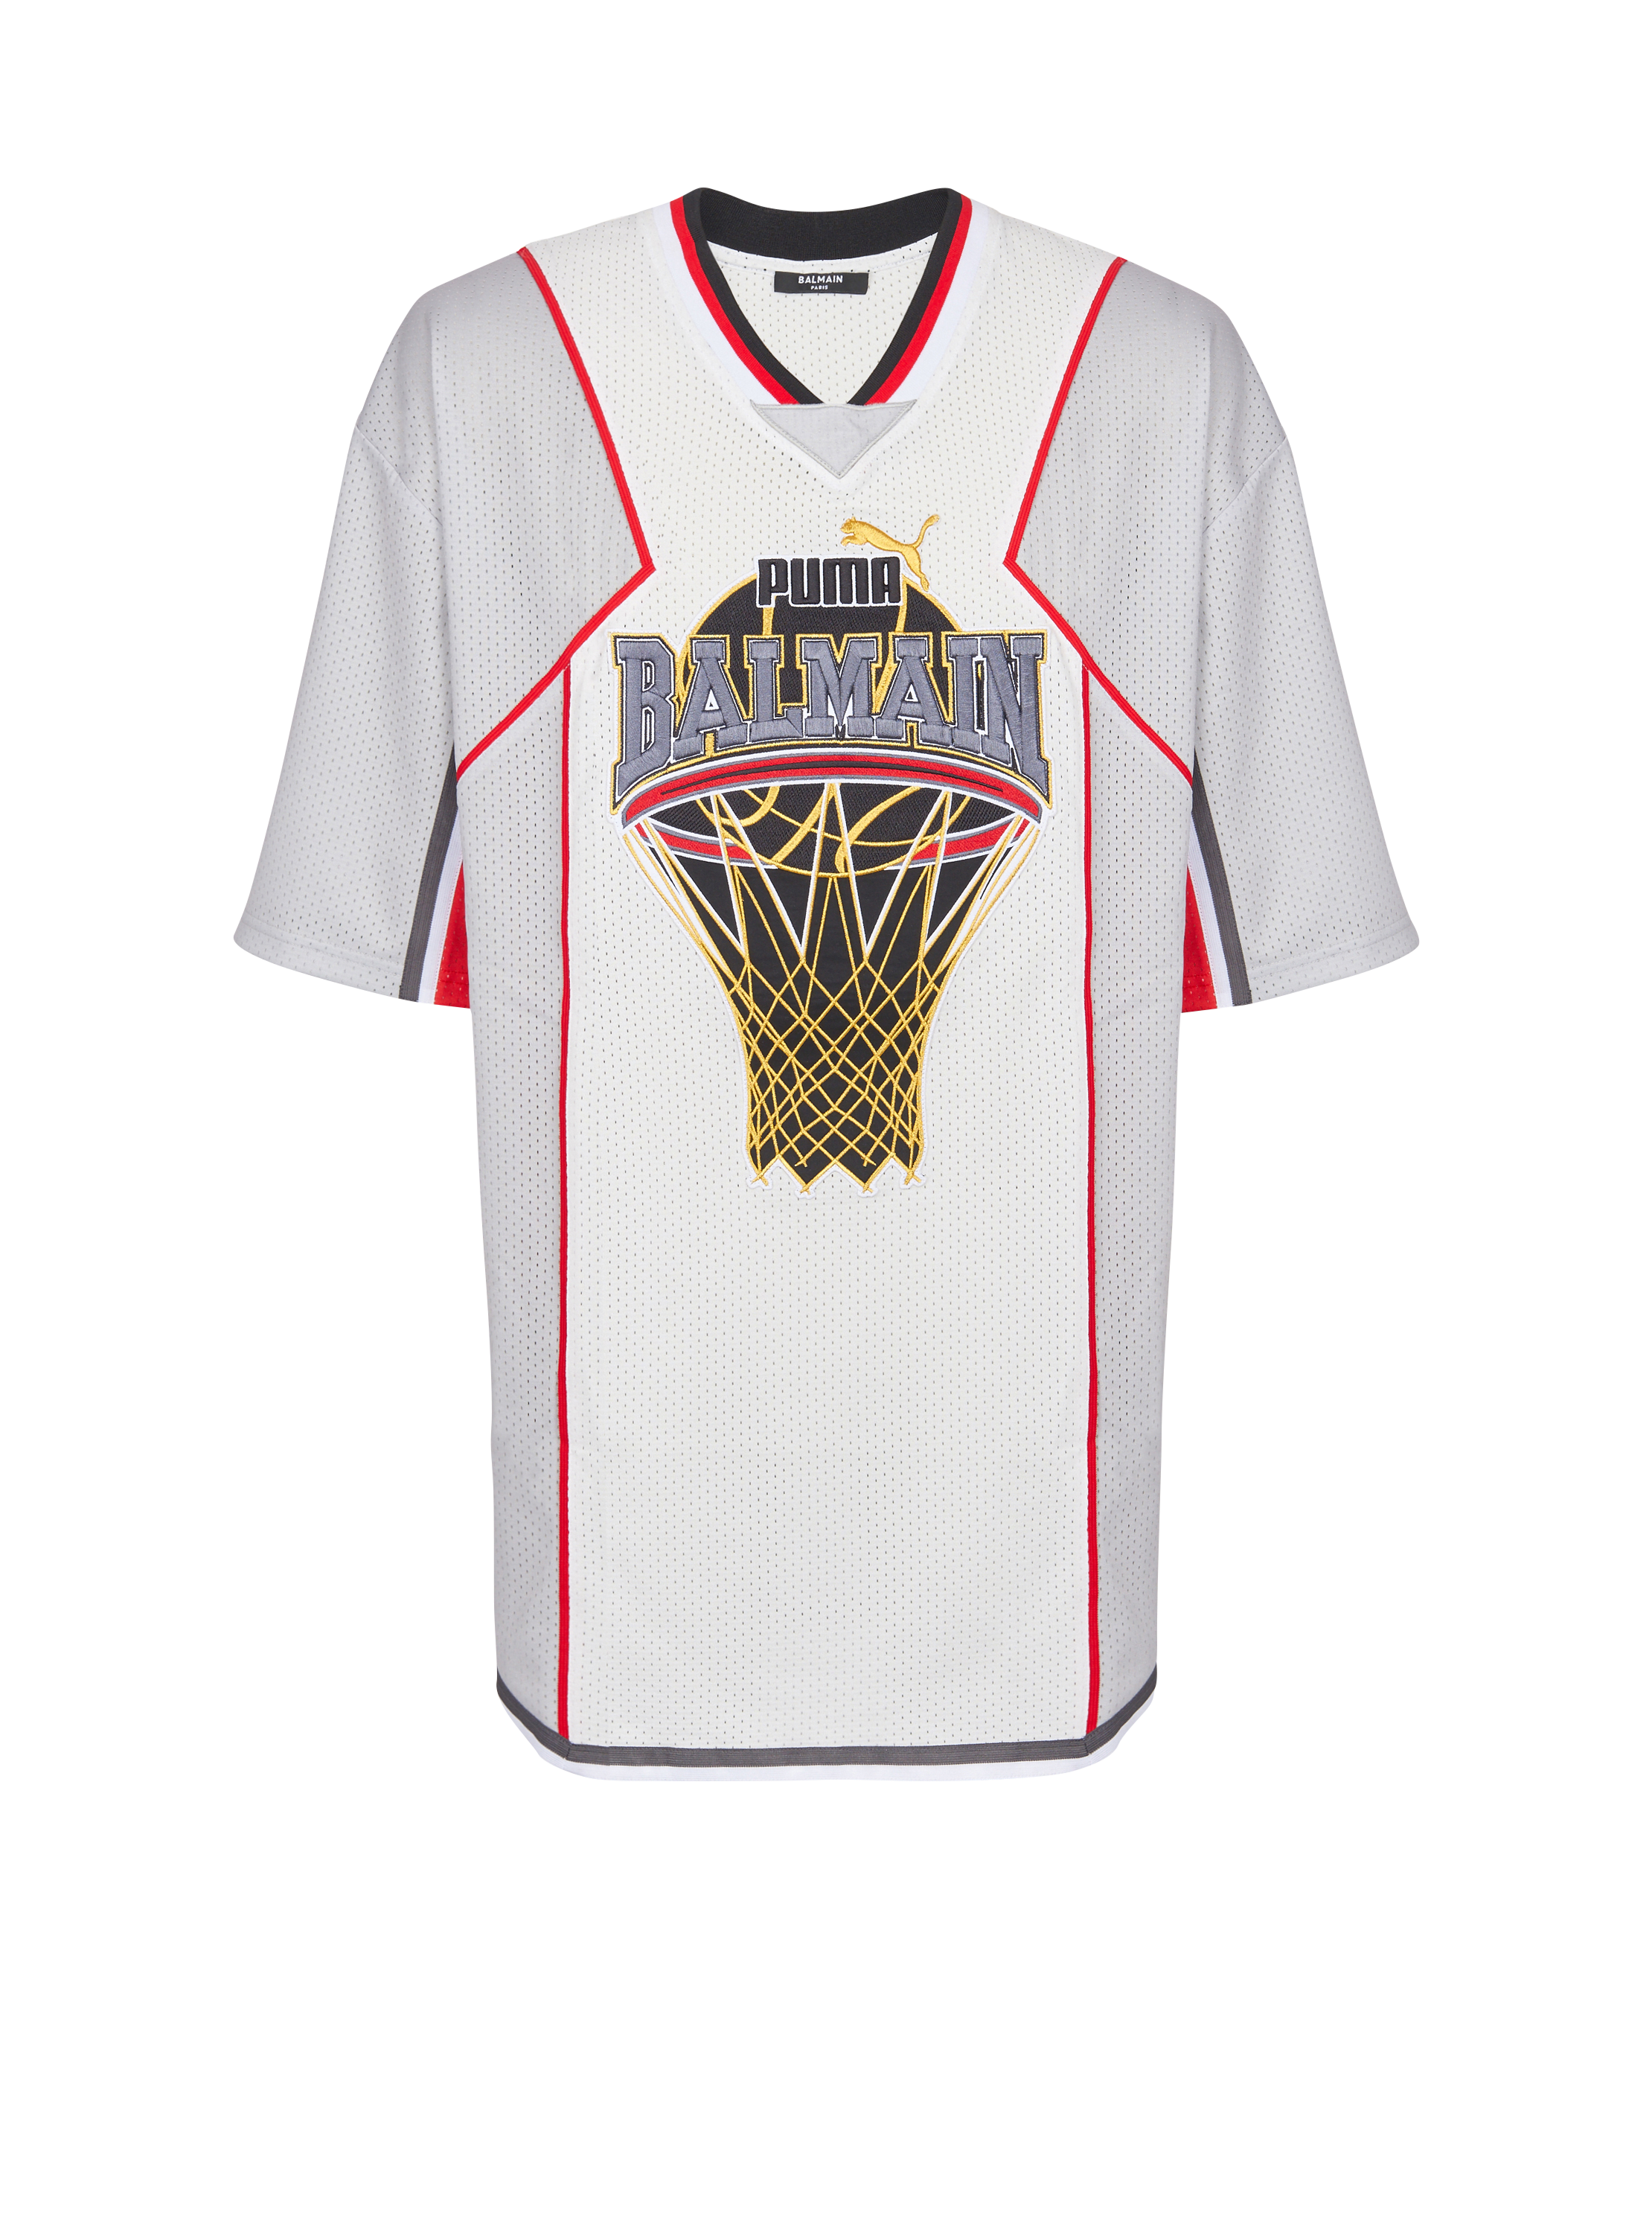 Balmain x Puma – Basketballshirt